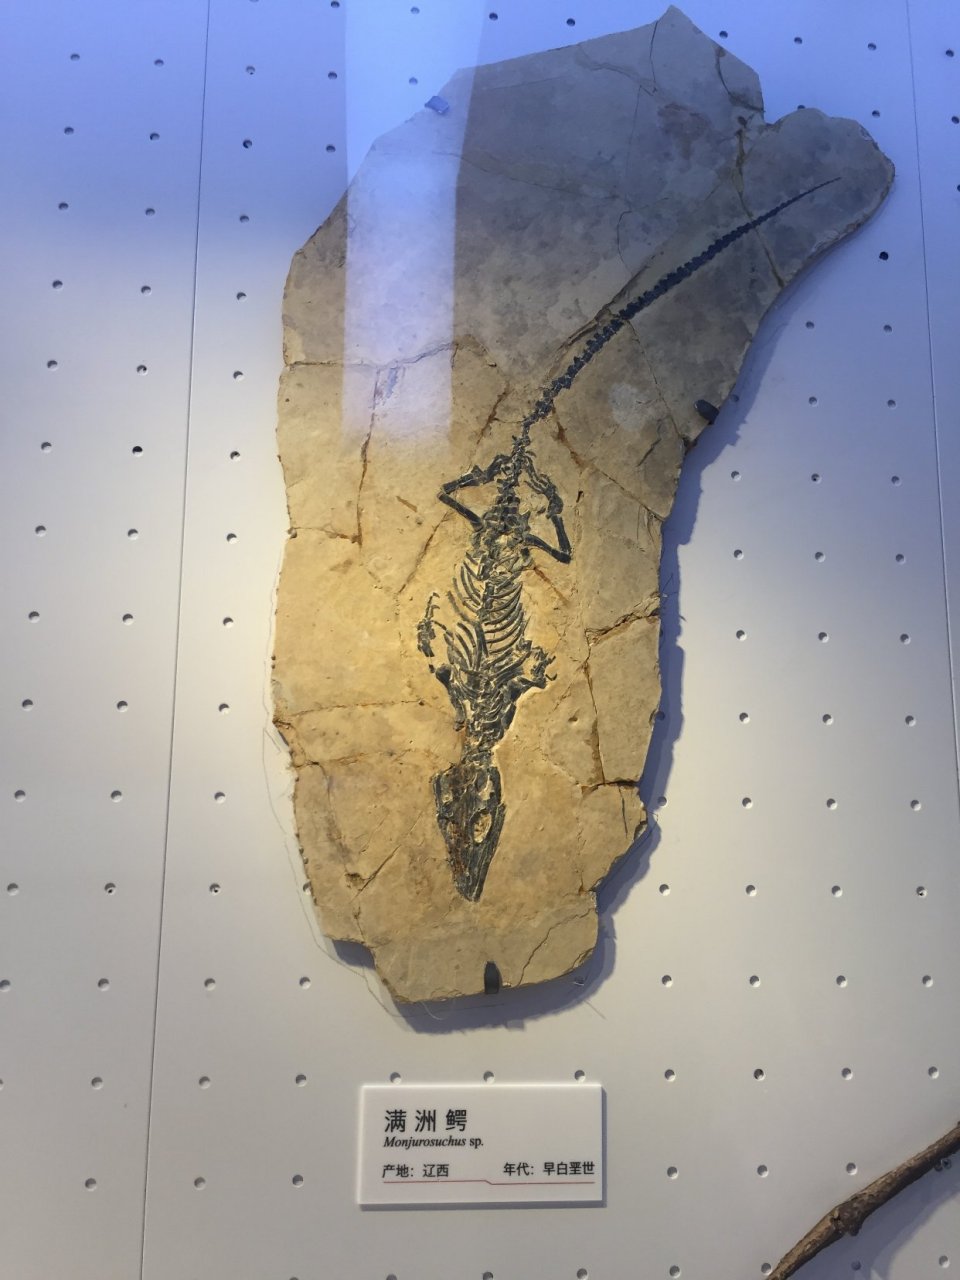 图一:重庆西蜀鳄,四川永川县双石桥地区,化石形成时代在中侏罗世(距今